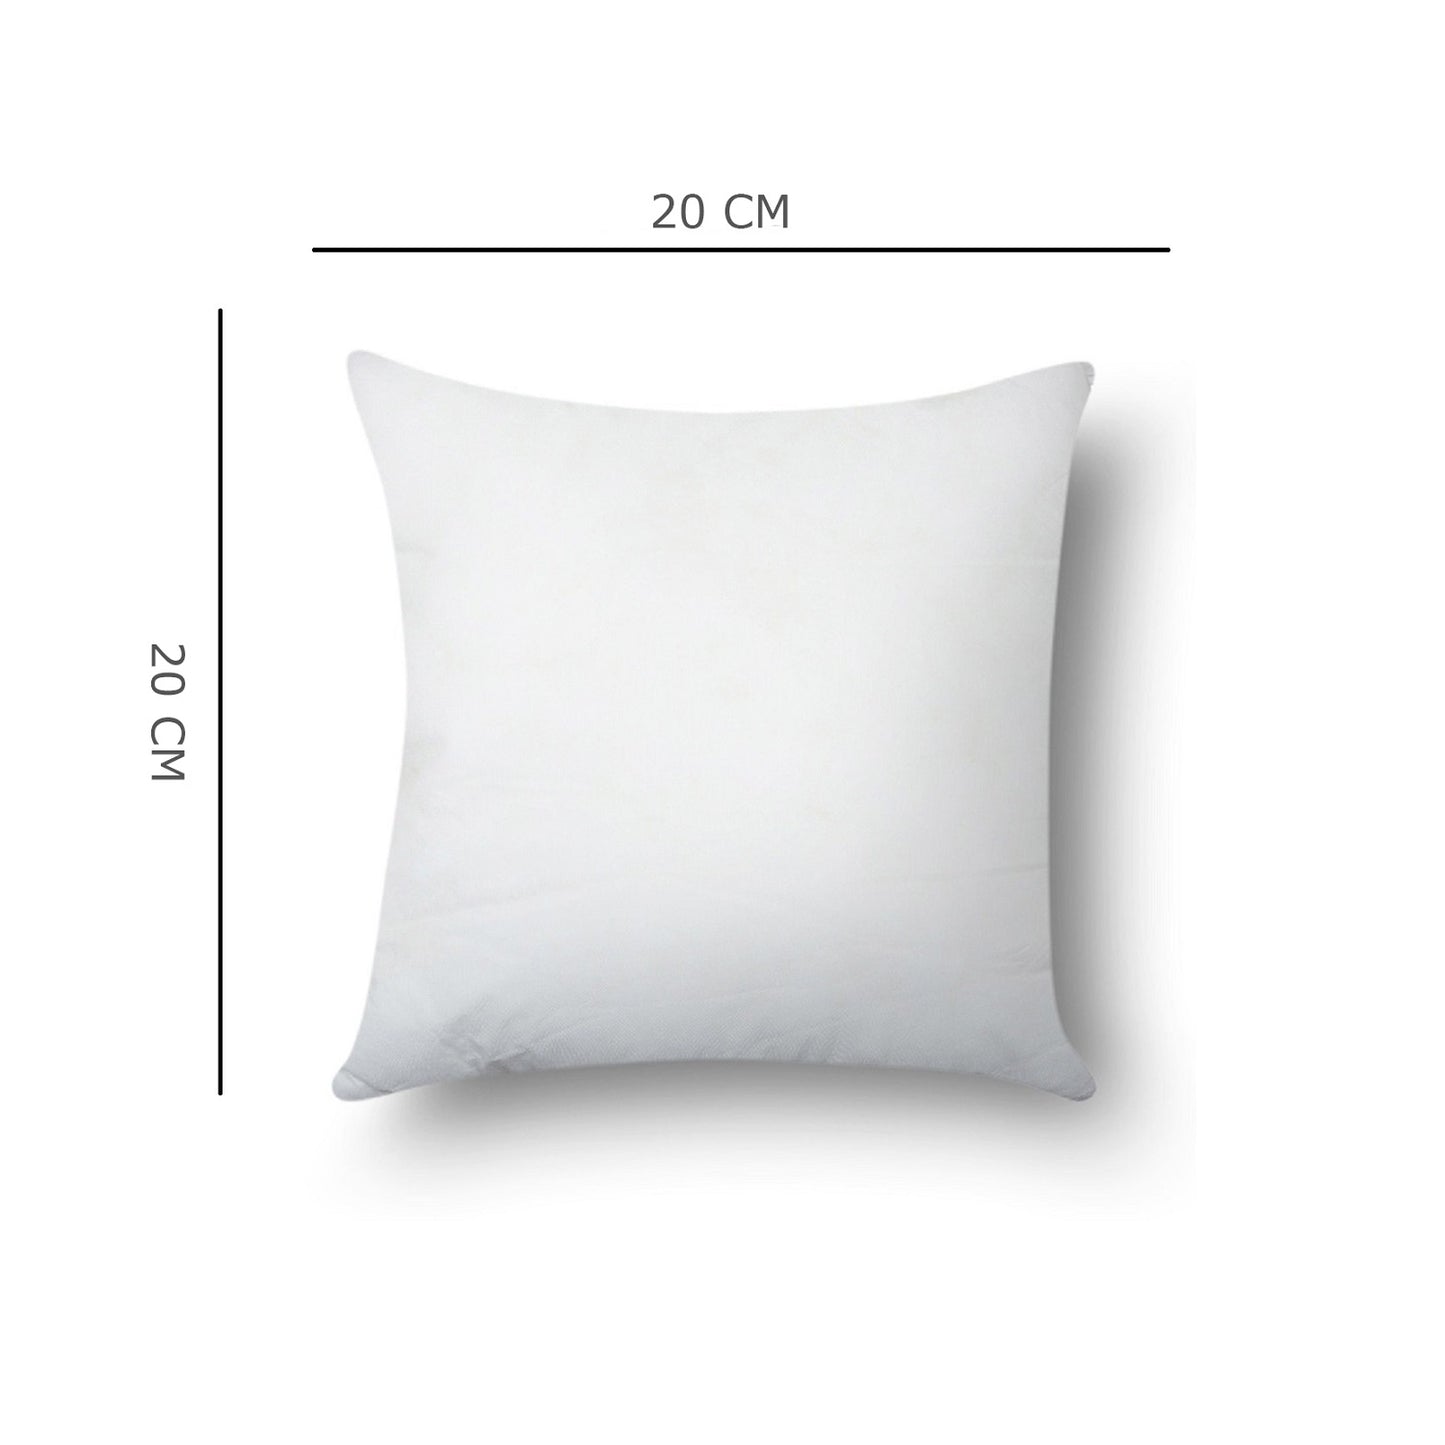 SWHF Cushion Filler 51 X 51 Cm (20 x 20 Inch) - SWHF